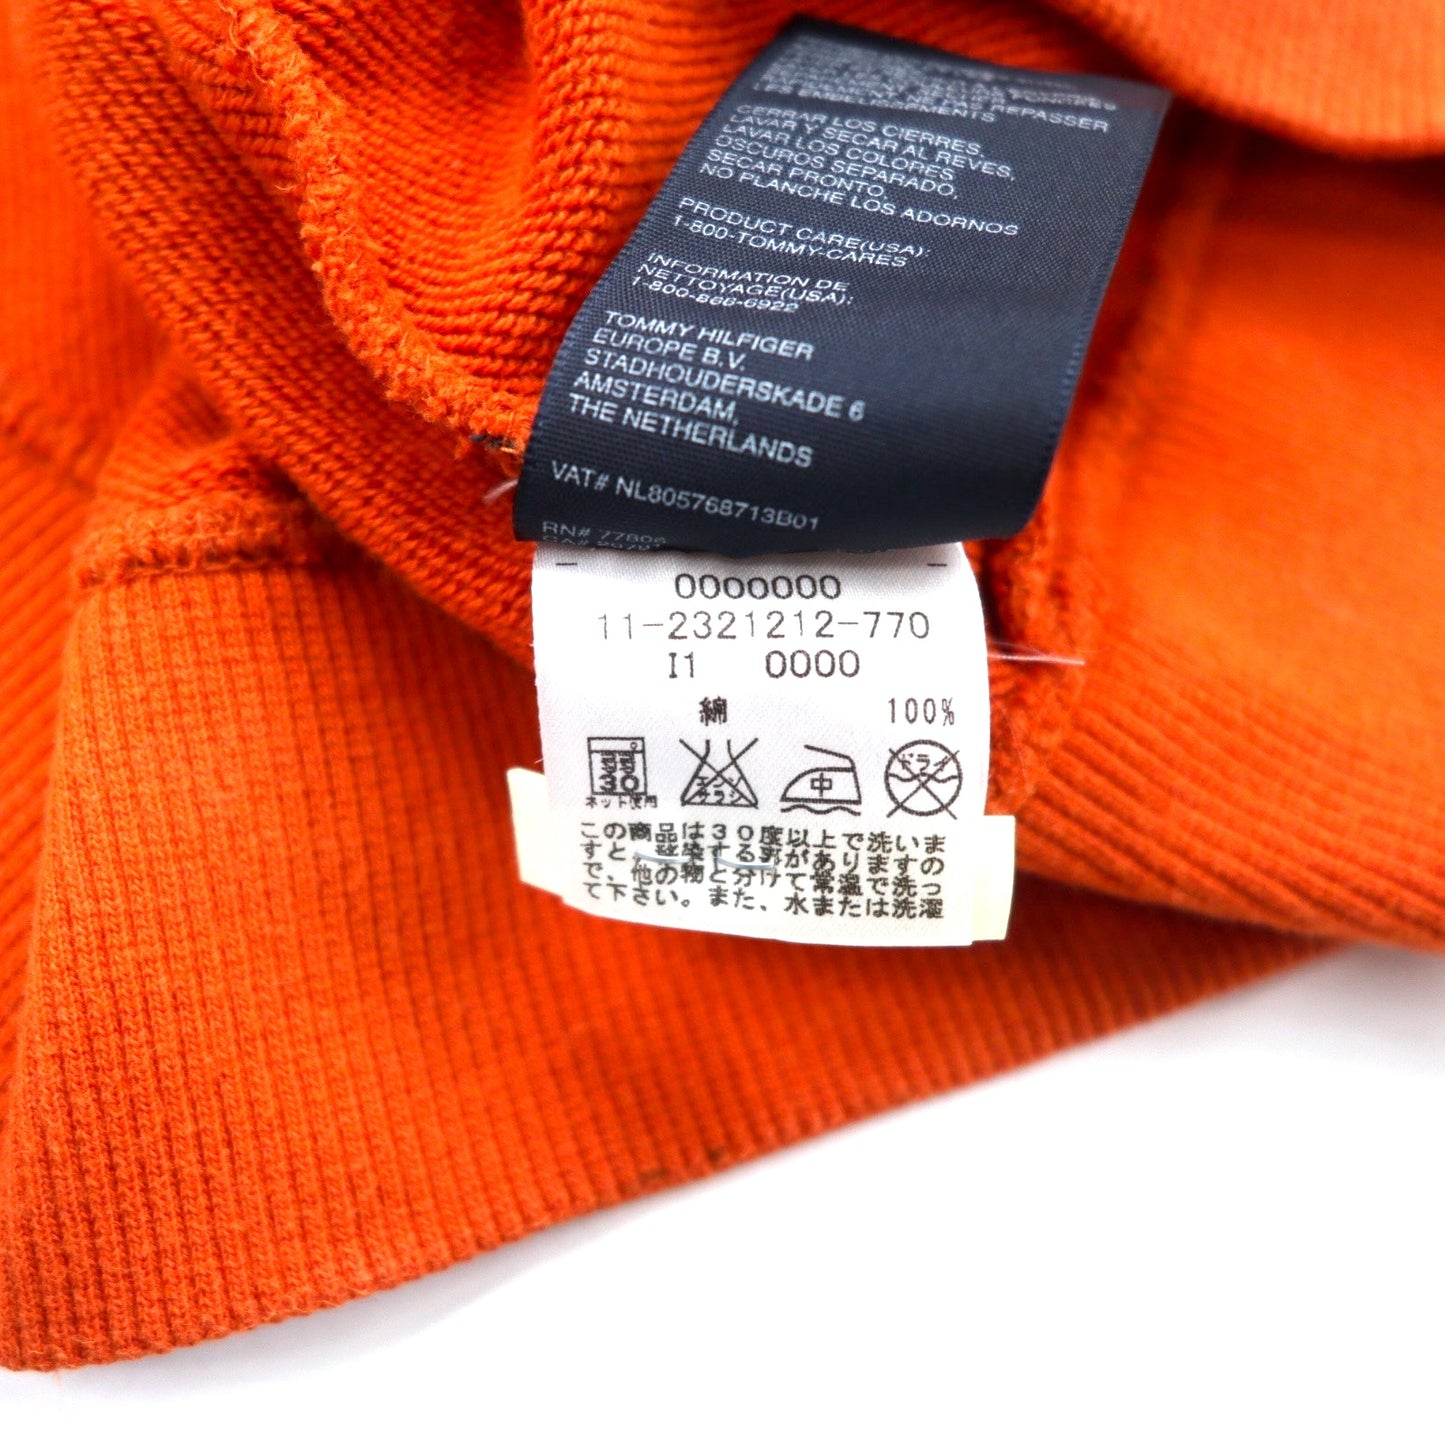 TOMMY HILFIGER トラックジャケット ジャージ XL オレンジ コットン WEST HIGH CHAMPIONS バック刺繍